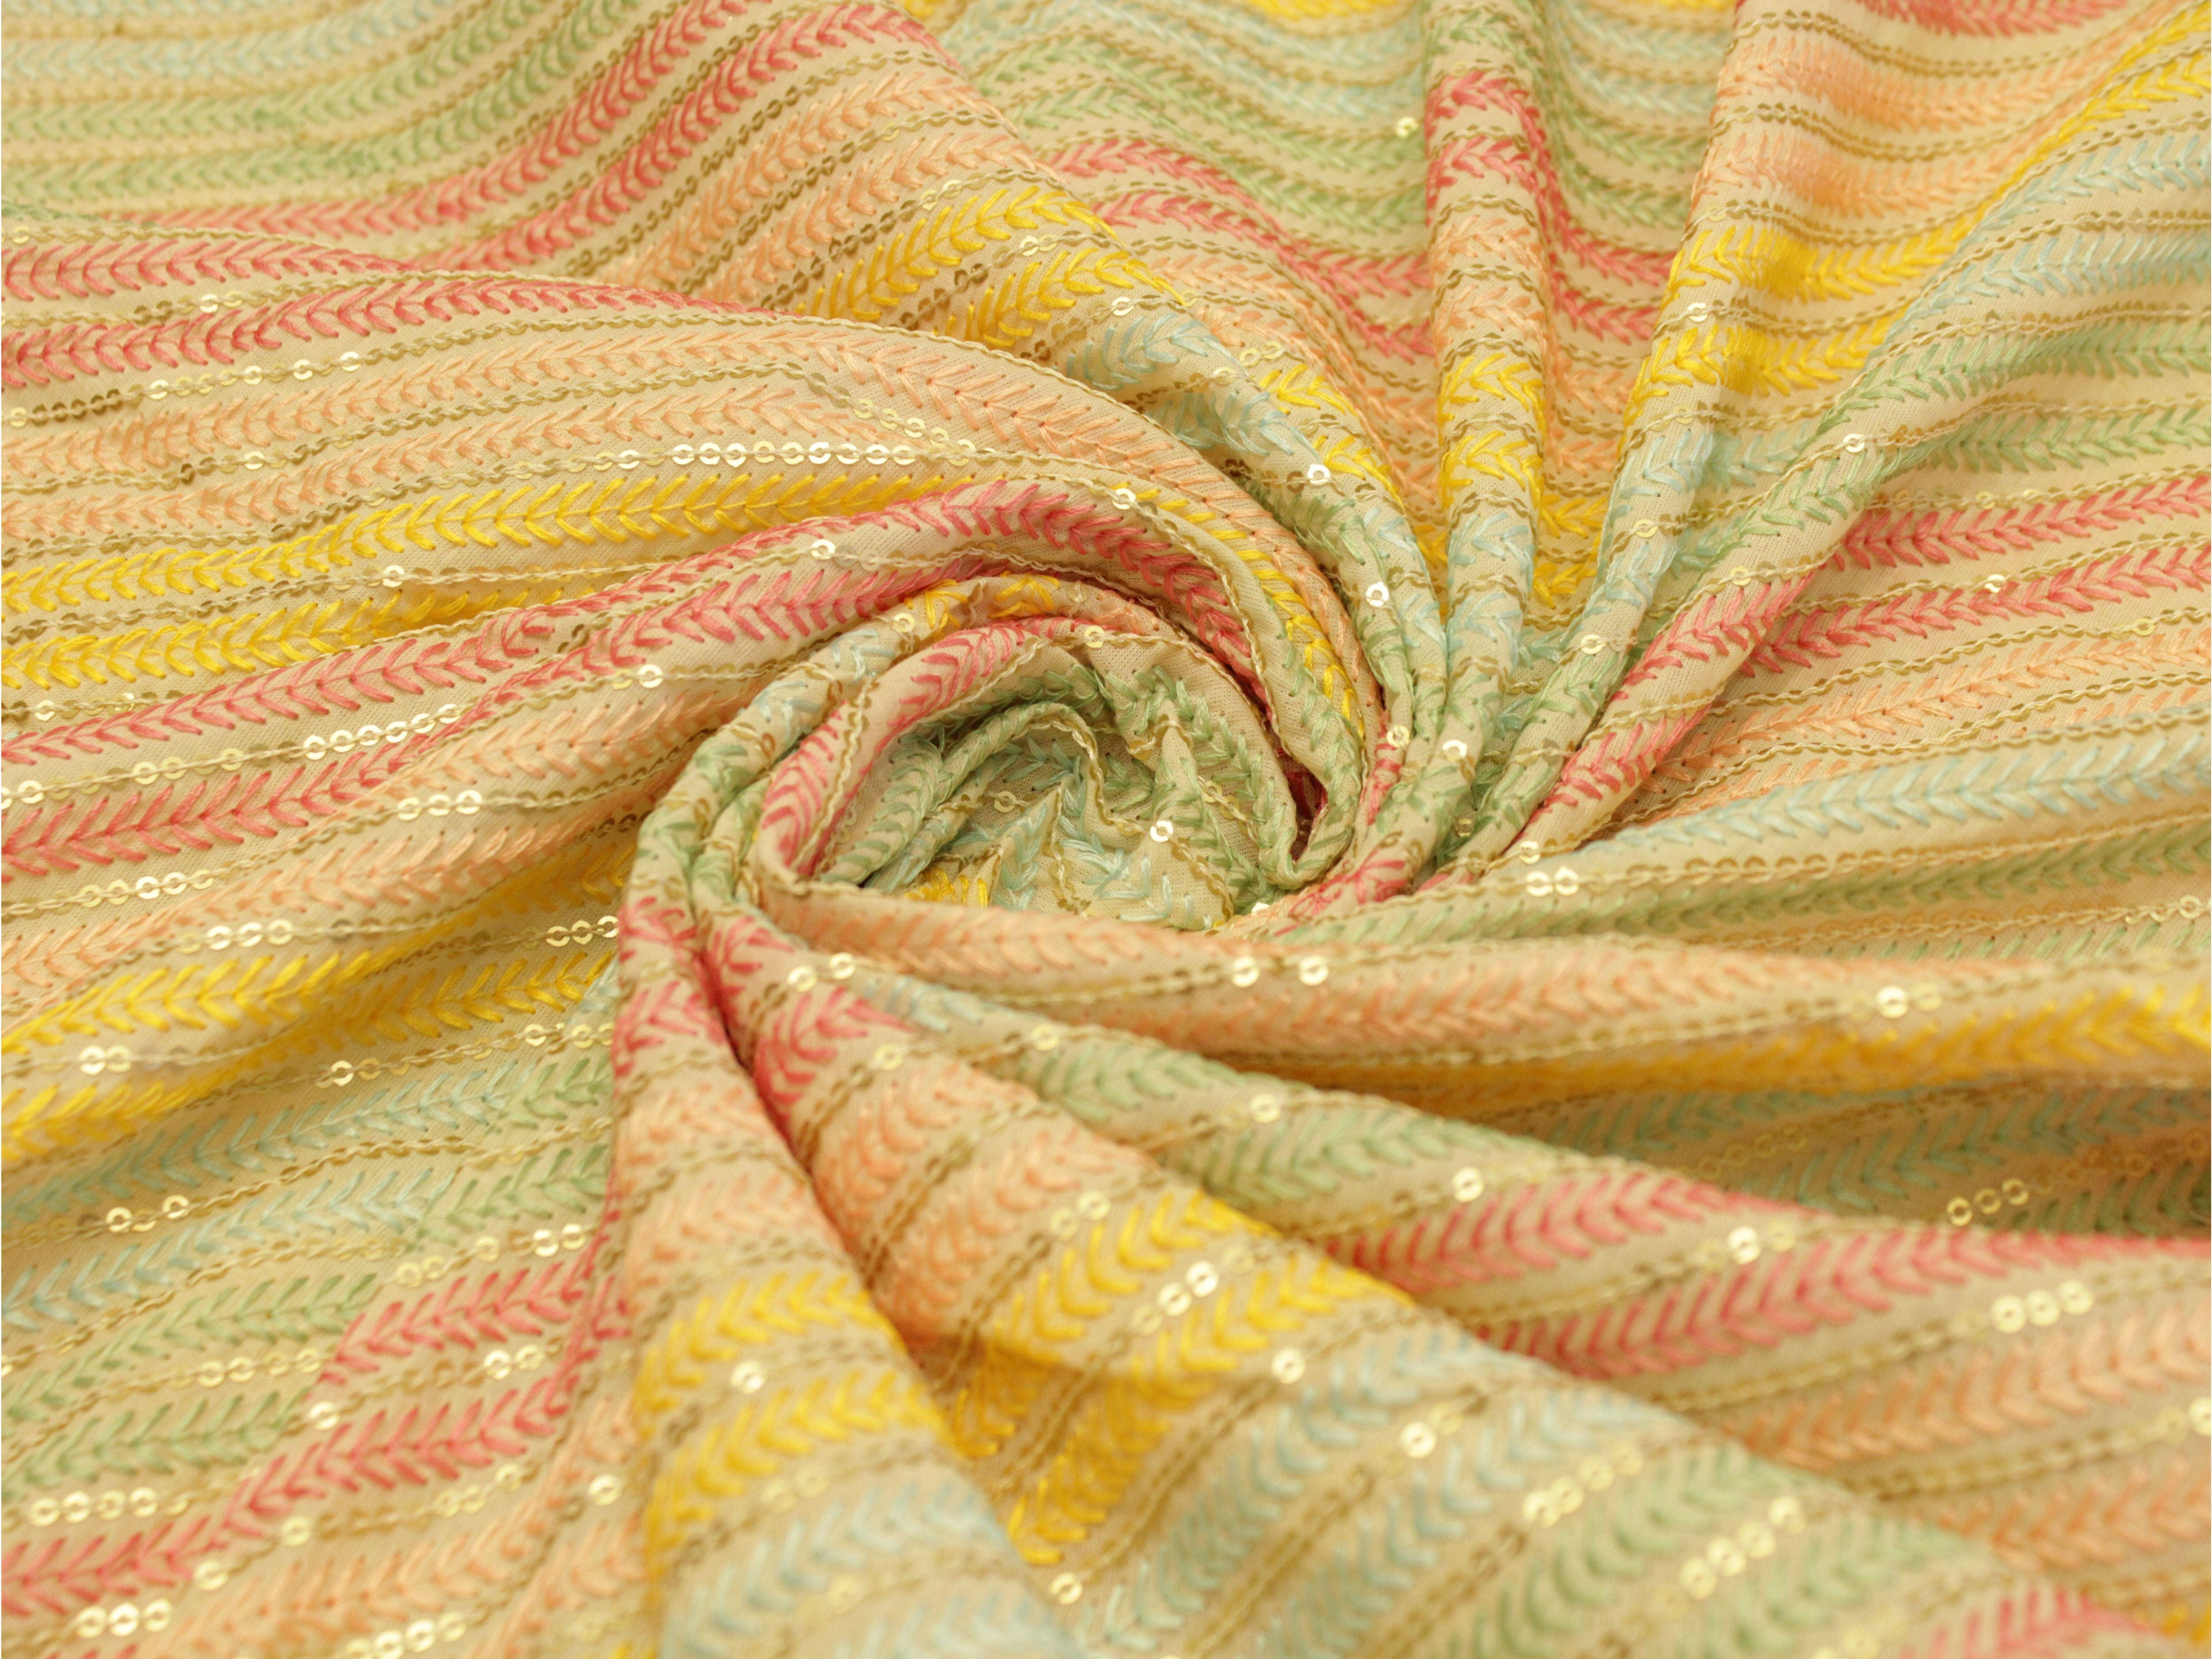 Celestial Threads: Mal Mal Lehariya Fiesta fabric by M'Foks - M'Foks